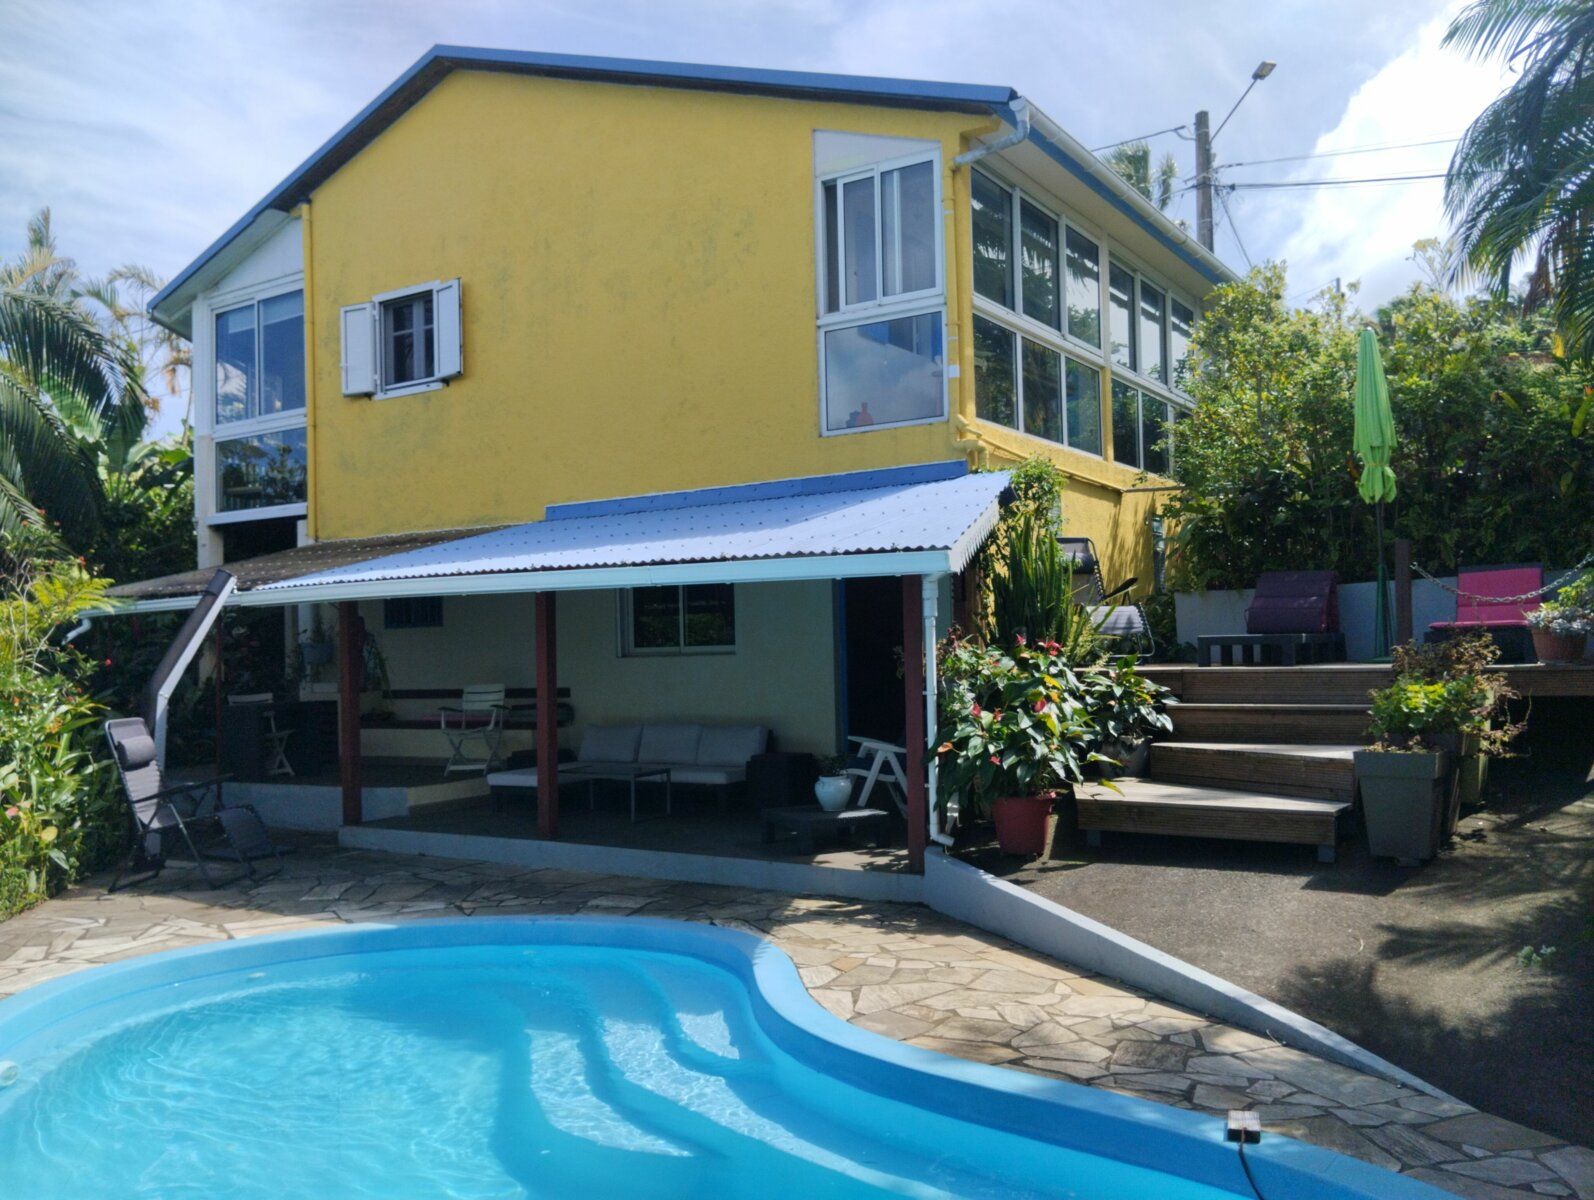 Maison à vendre 6 130m2 à Petite-Île vignette-1